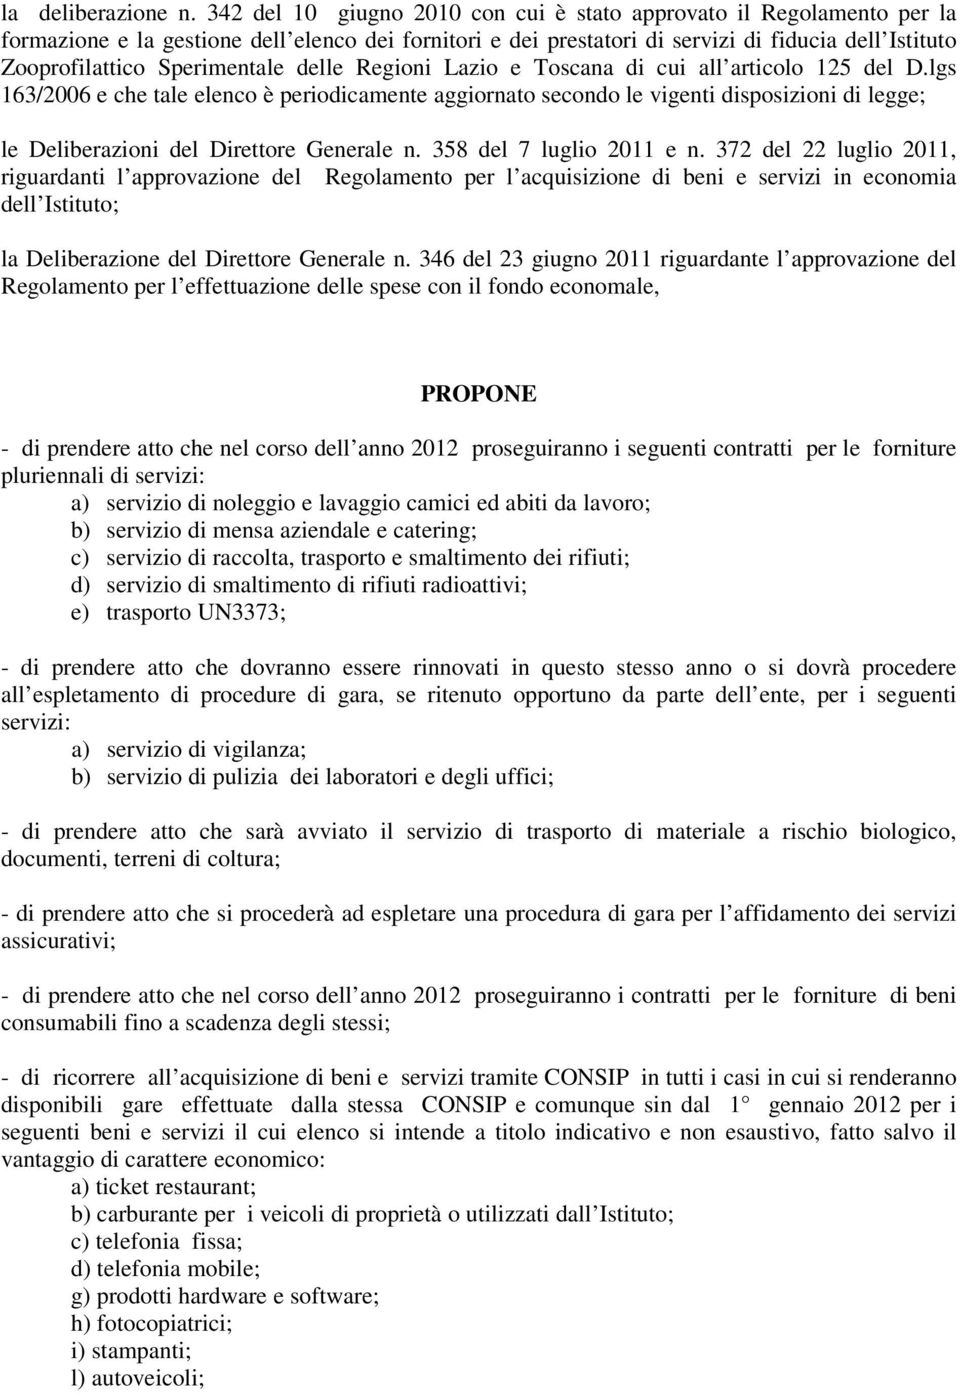 Sperimentale delle Regioni Lazio e Toscana di cui all articolo 125 del D.